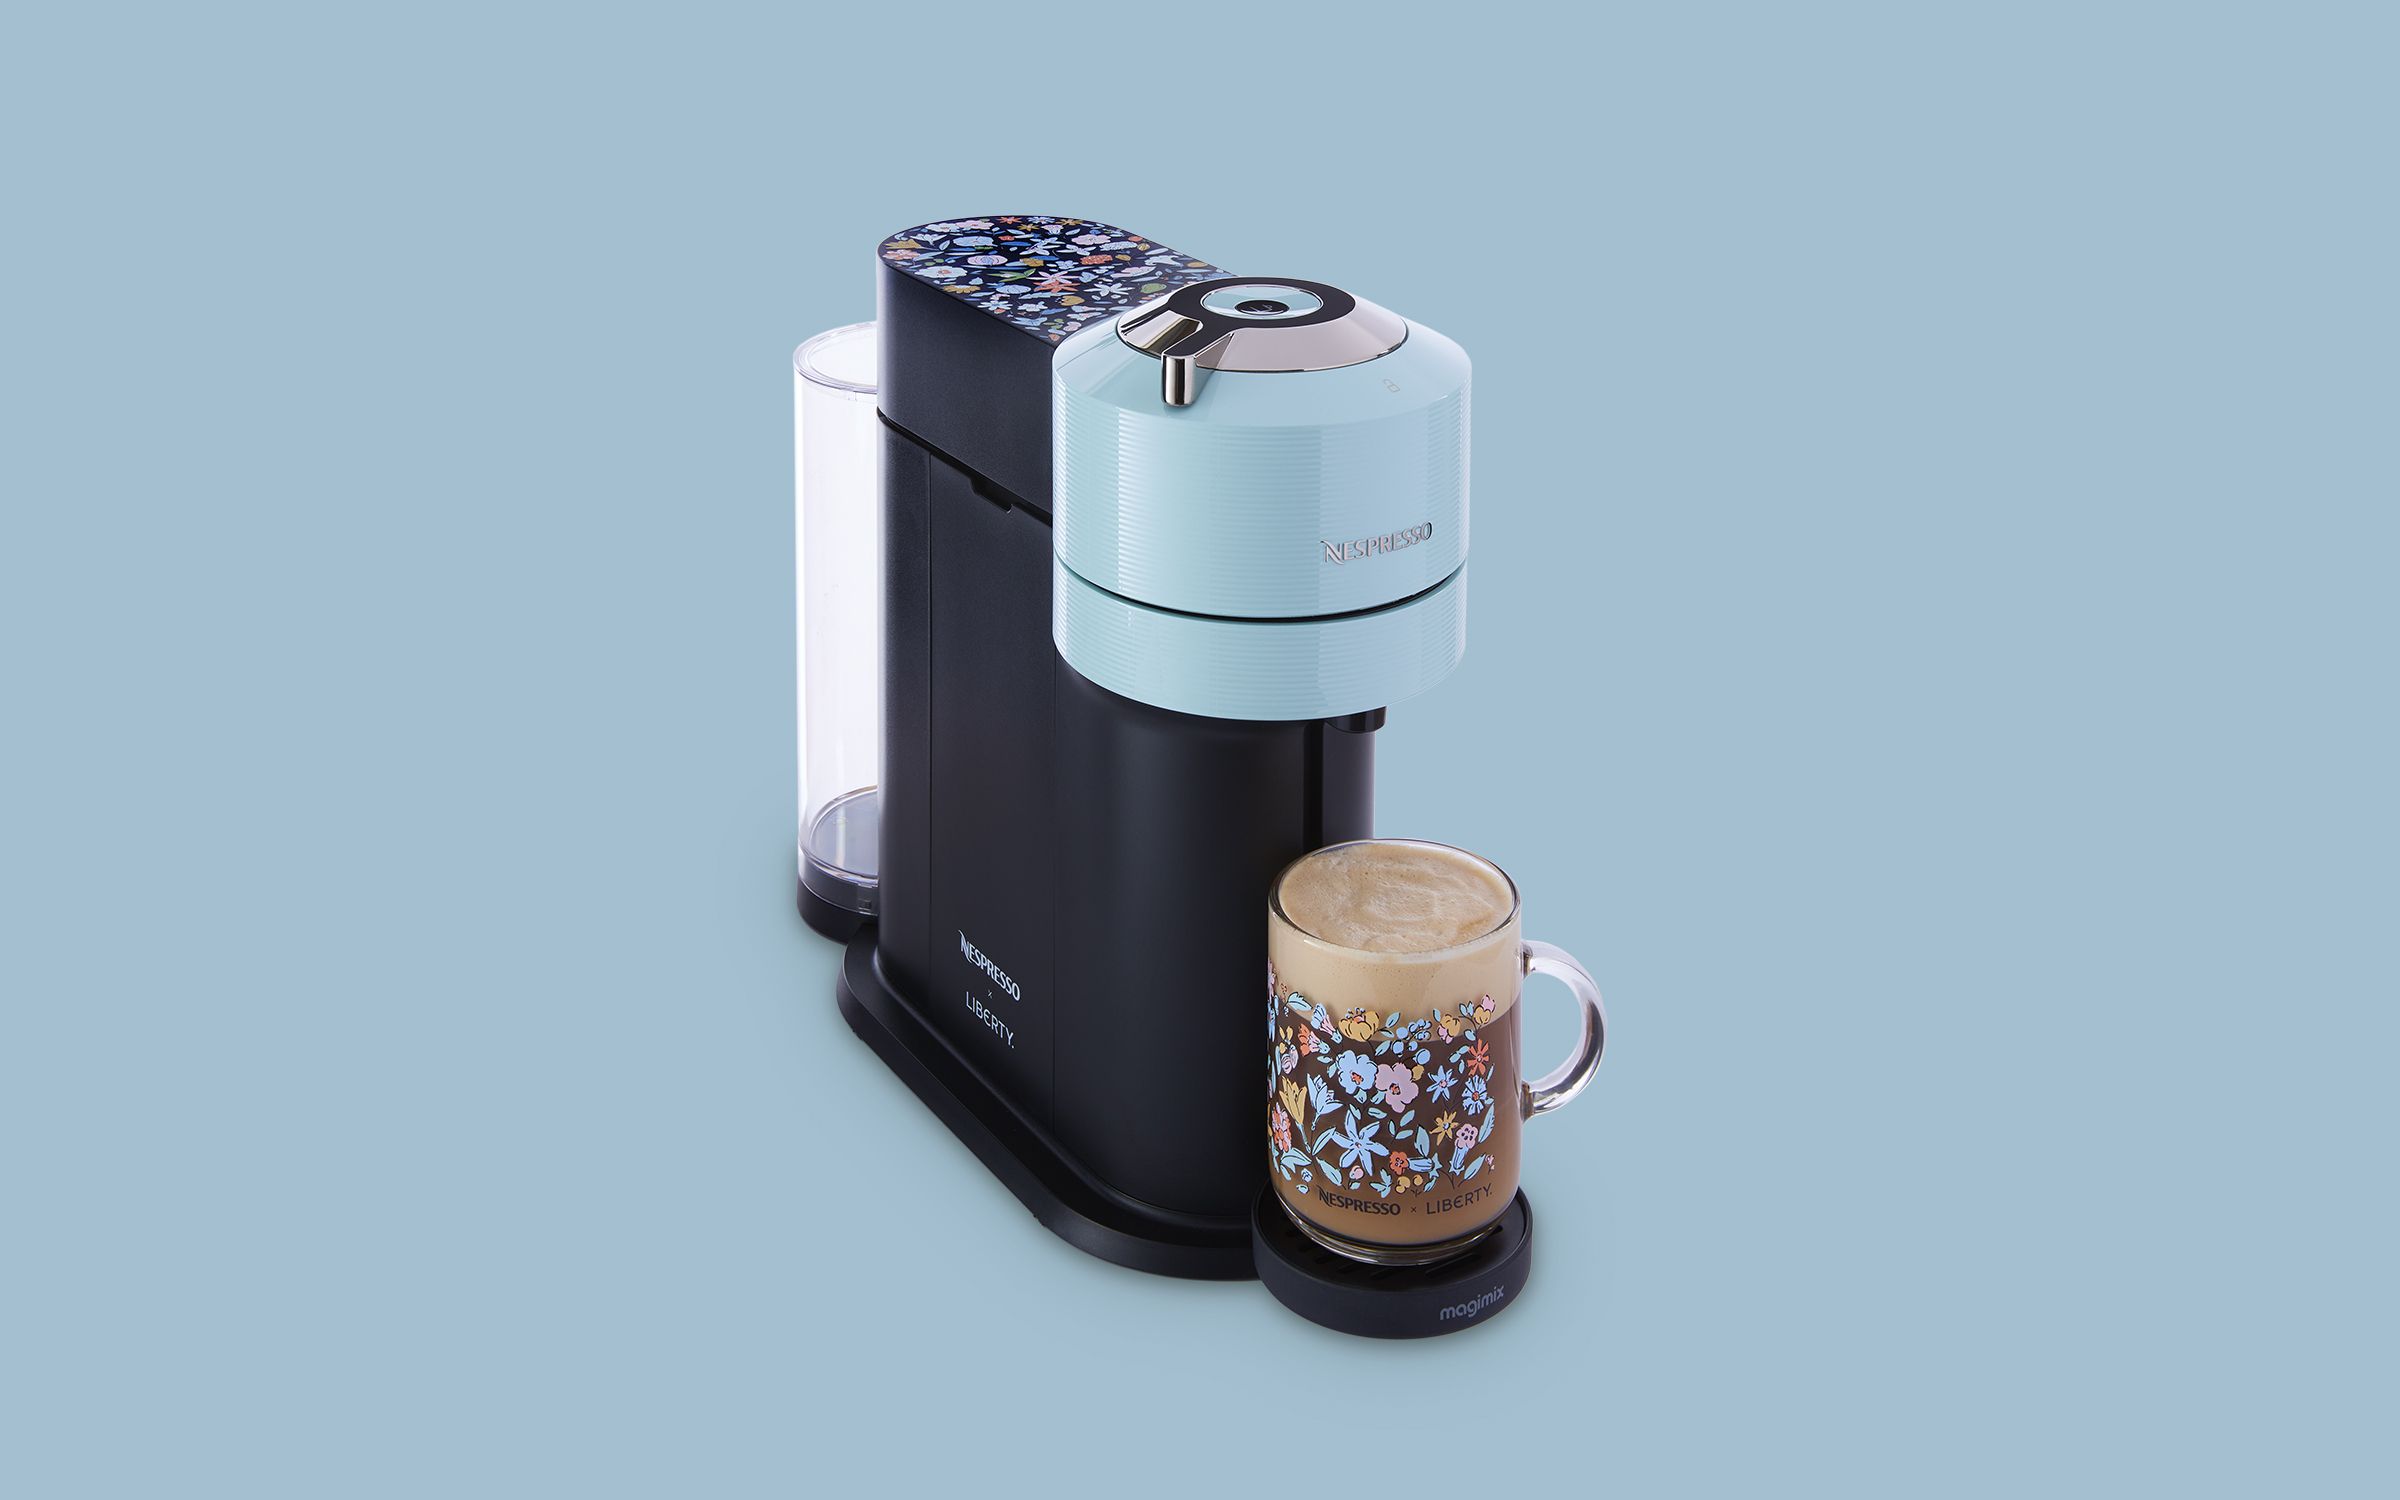 On trial: the Nespresso X Liberty Next coffee machine